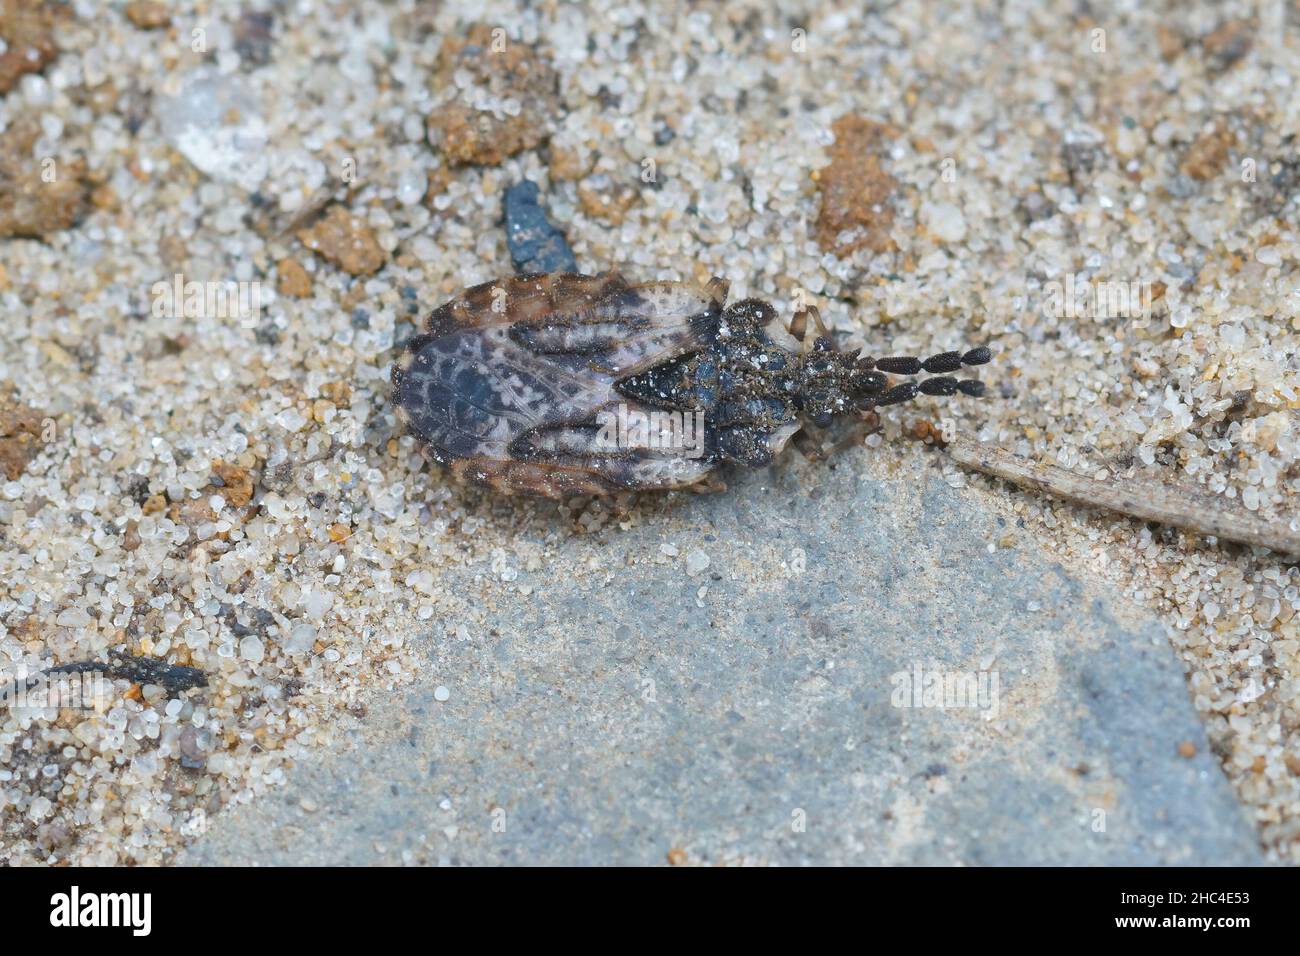 Closeup of the common flatbug, Aradus depressus in sandy soil Stock Photo